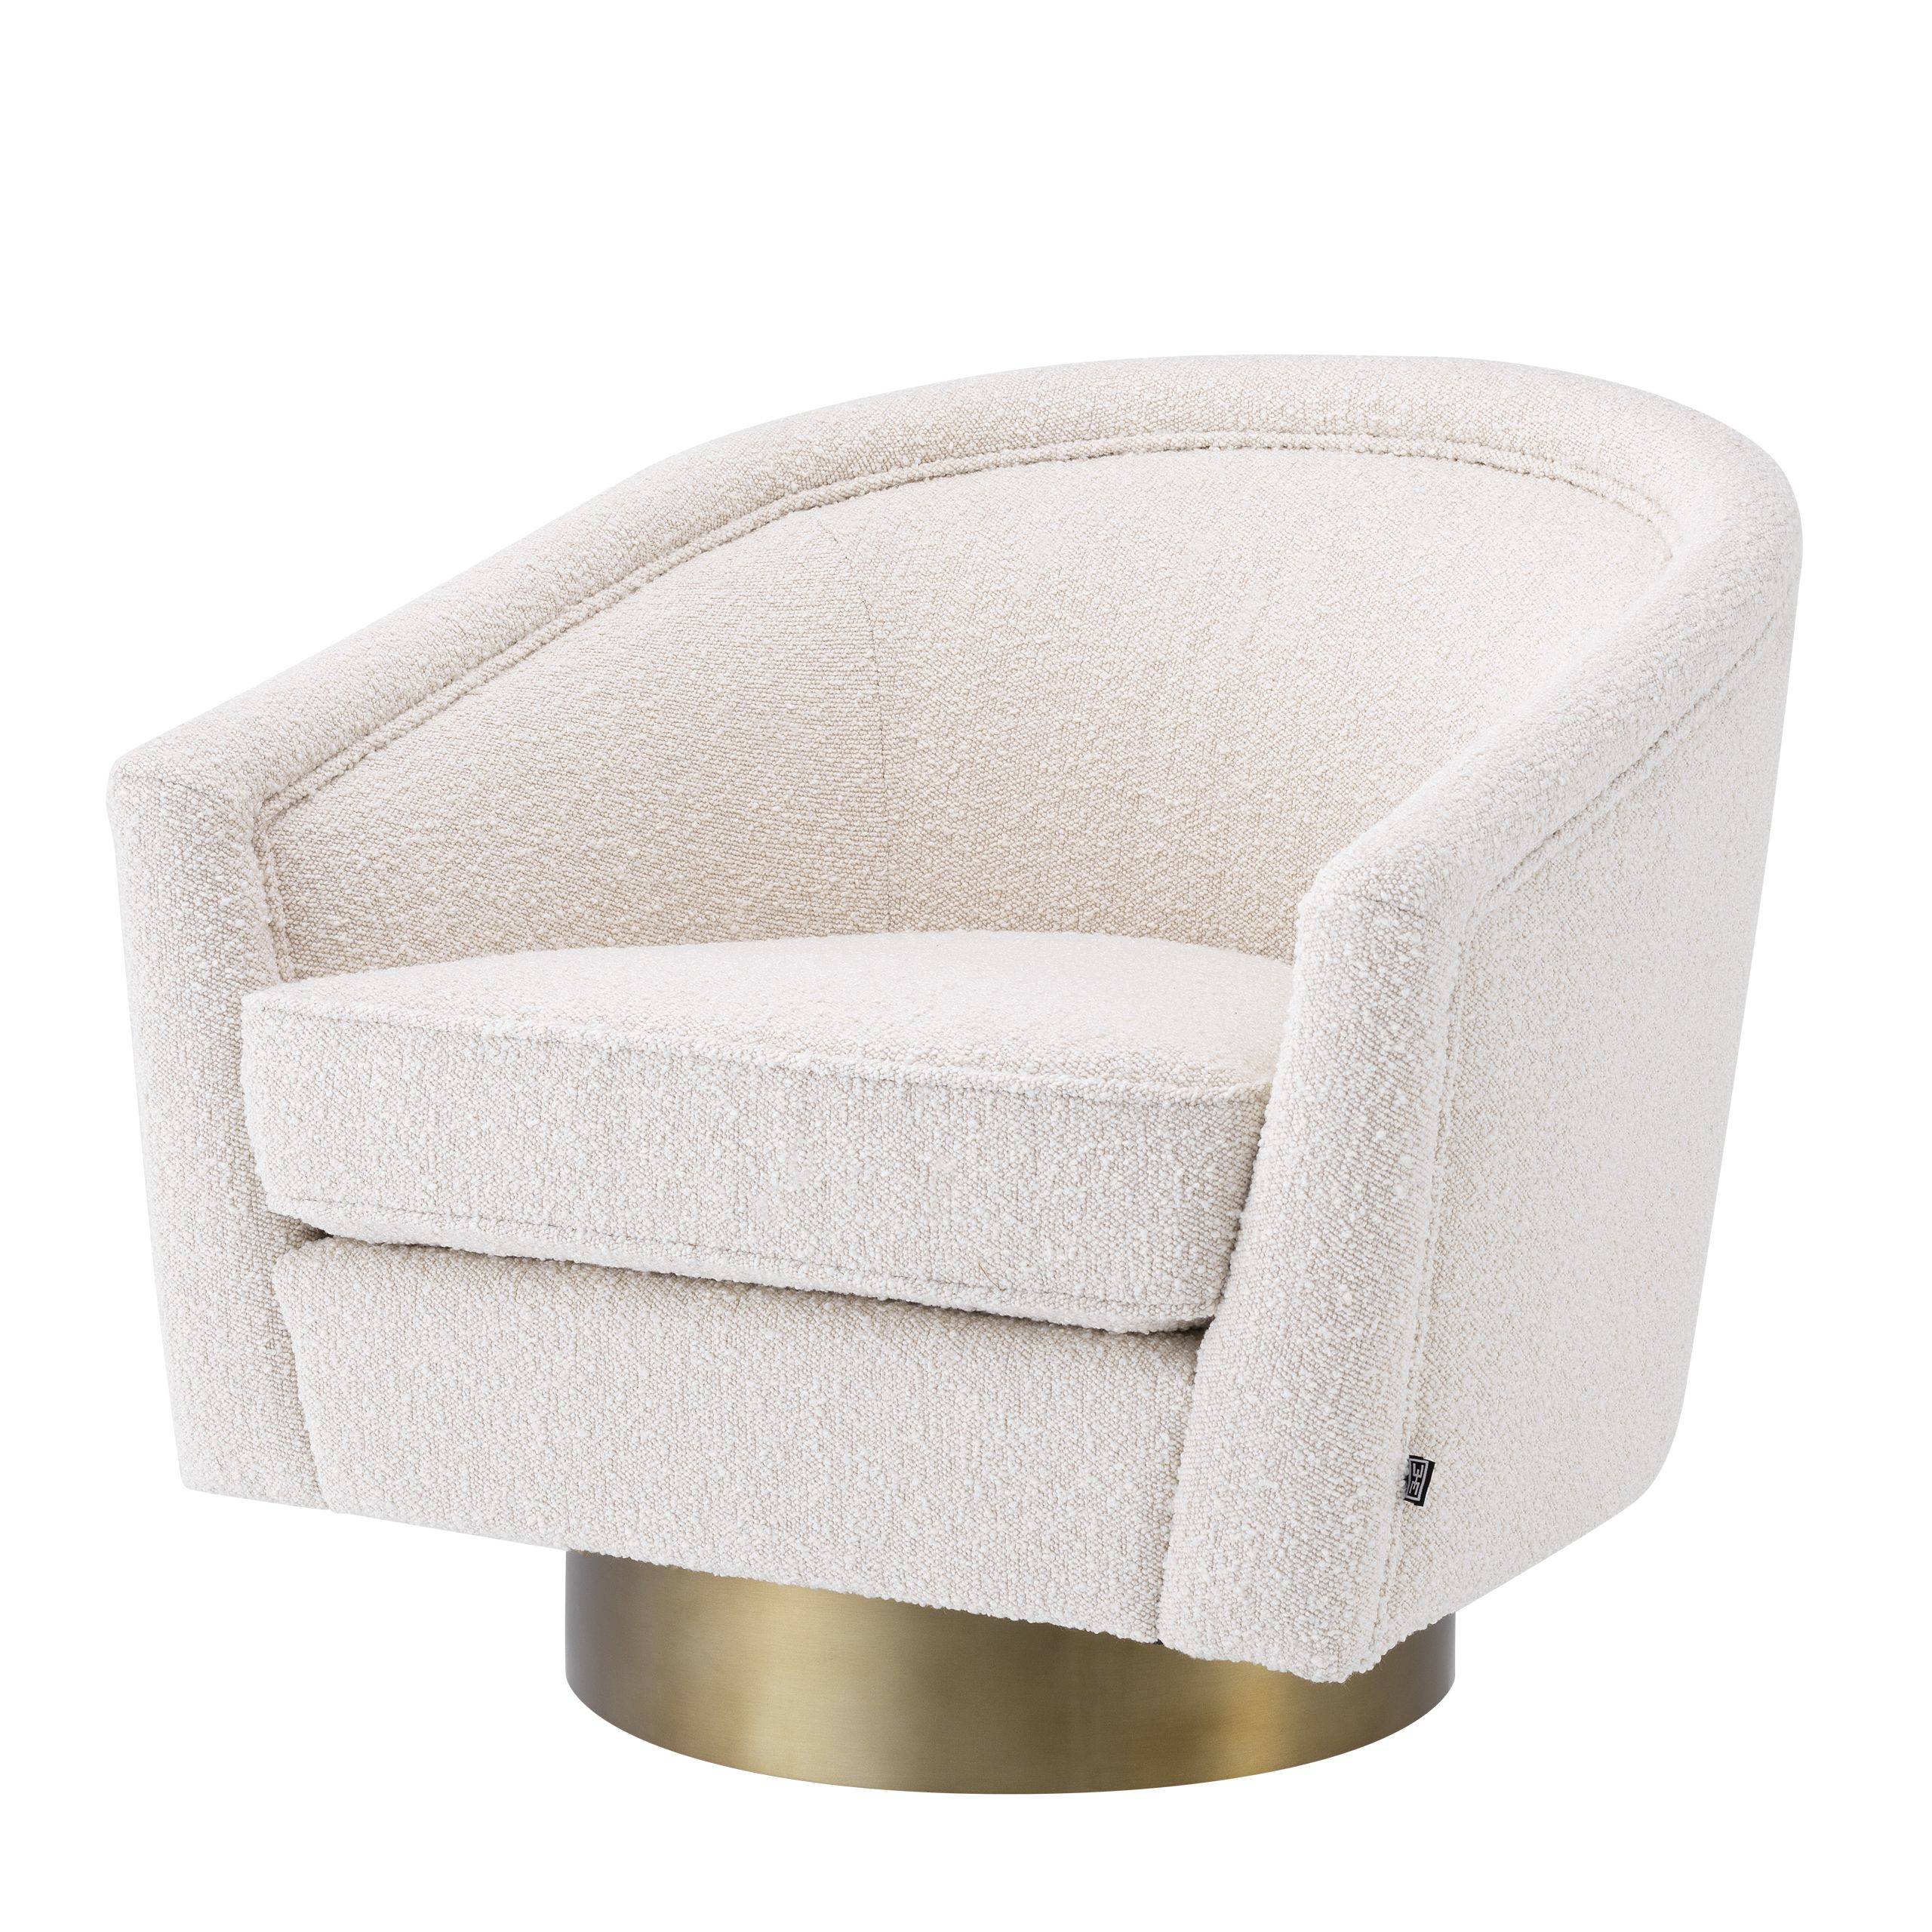 Fauteuil design de luxe moderne pour salon, fauteuil confortable